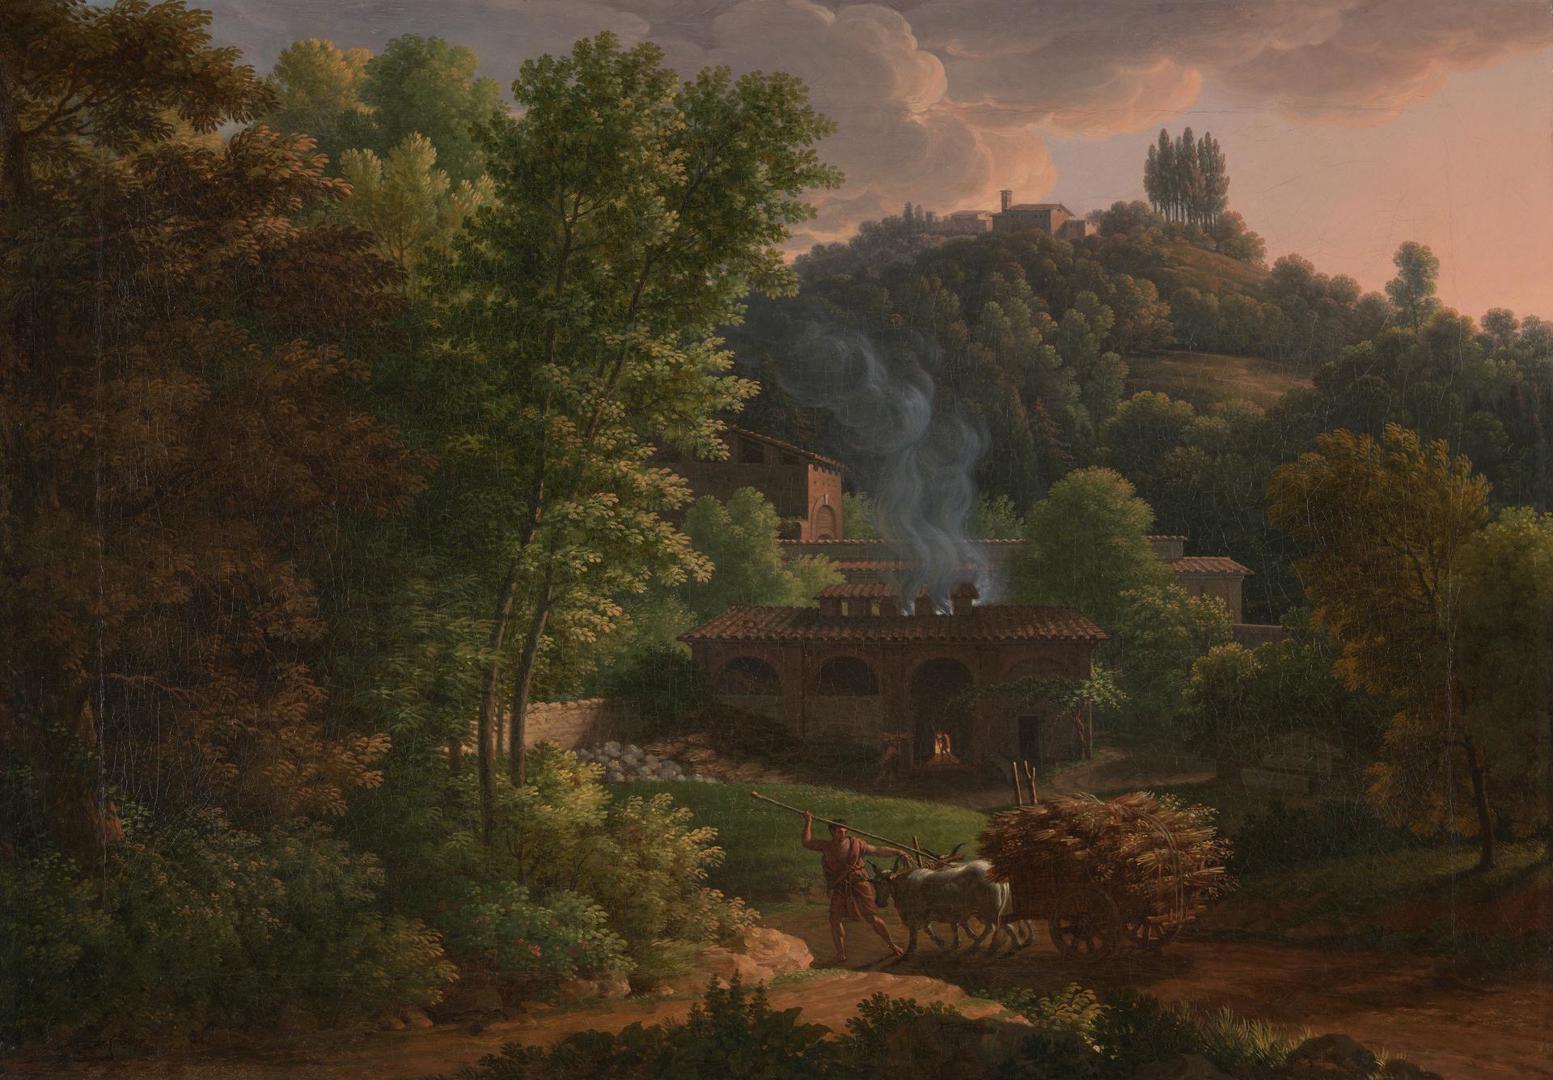 Italian Landscape by François-Xavier Fabre